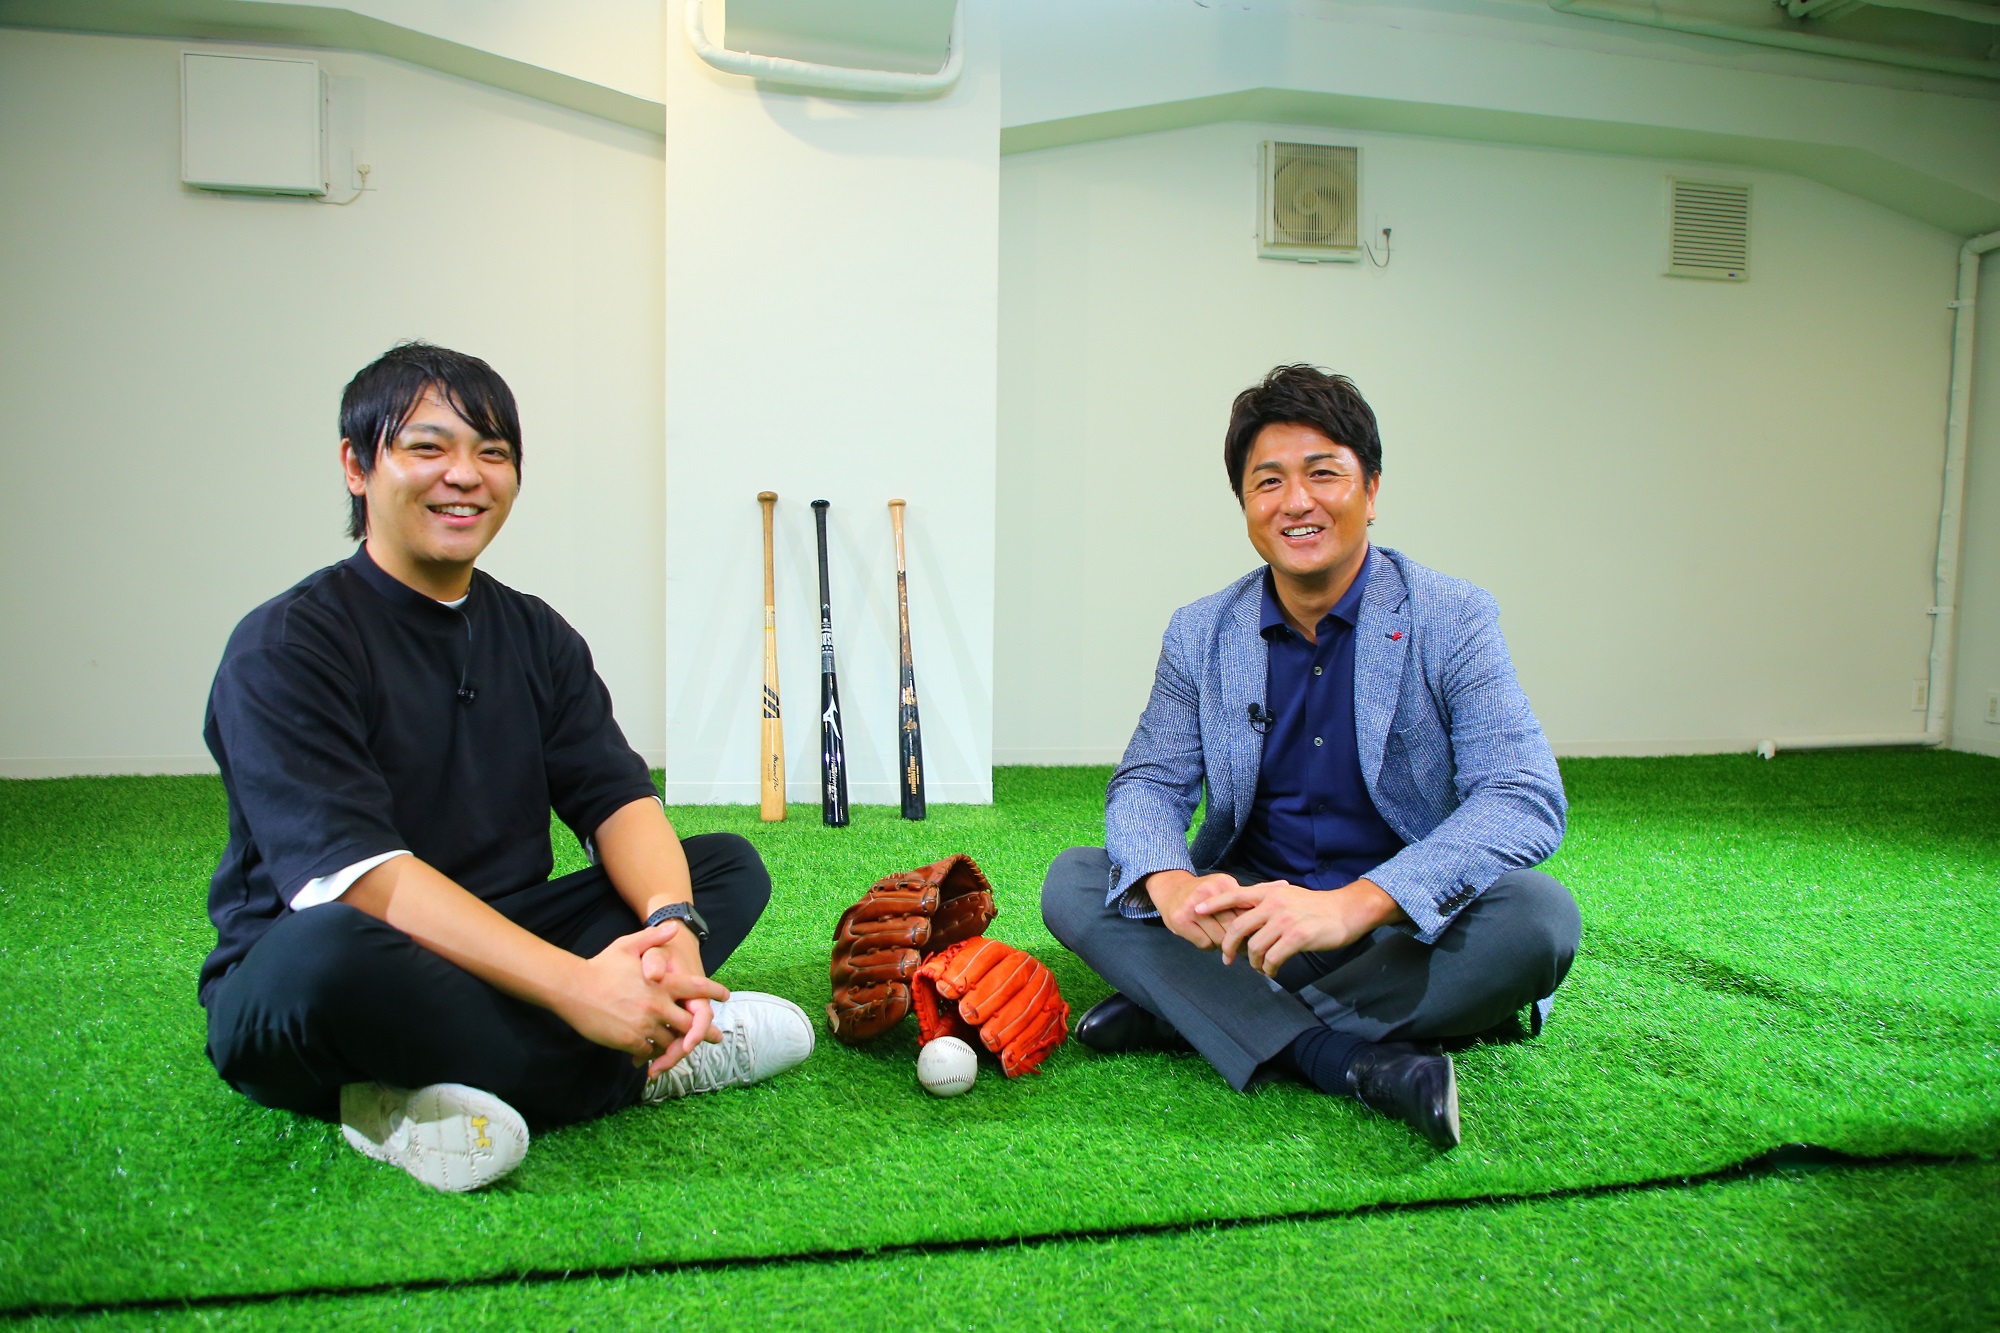 野球部出身者は営業向き 高橋由伸さん、新ビジネスに感心 | OVO [オーヴォ]